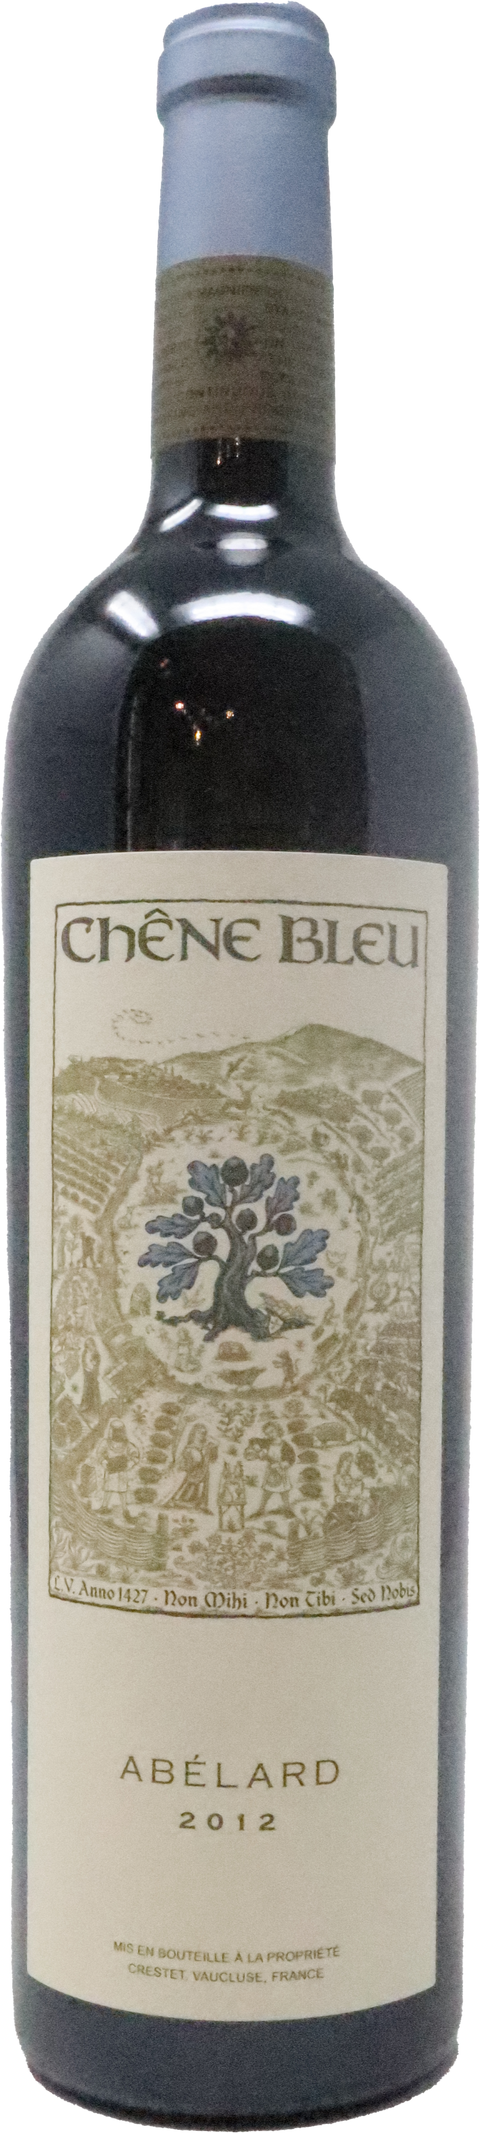 2015 Chêne Bleu "Abélard" VDP Vaucluse, Rhone Valley, France